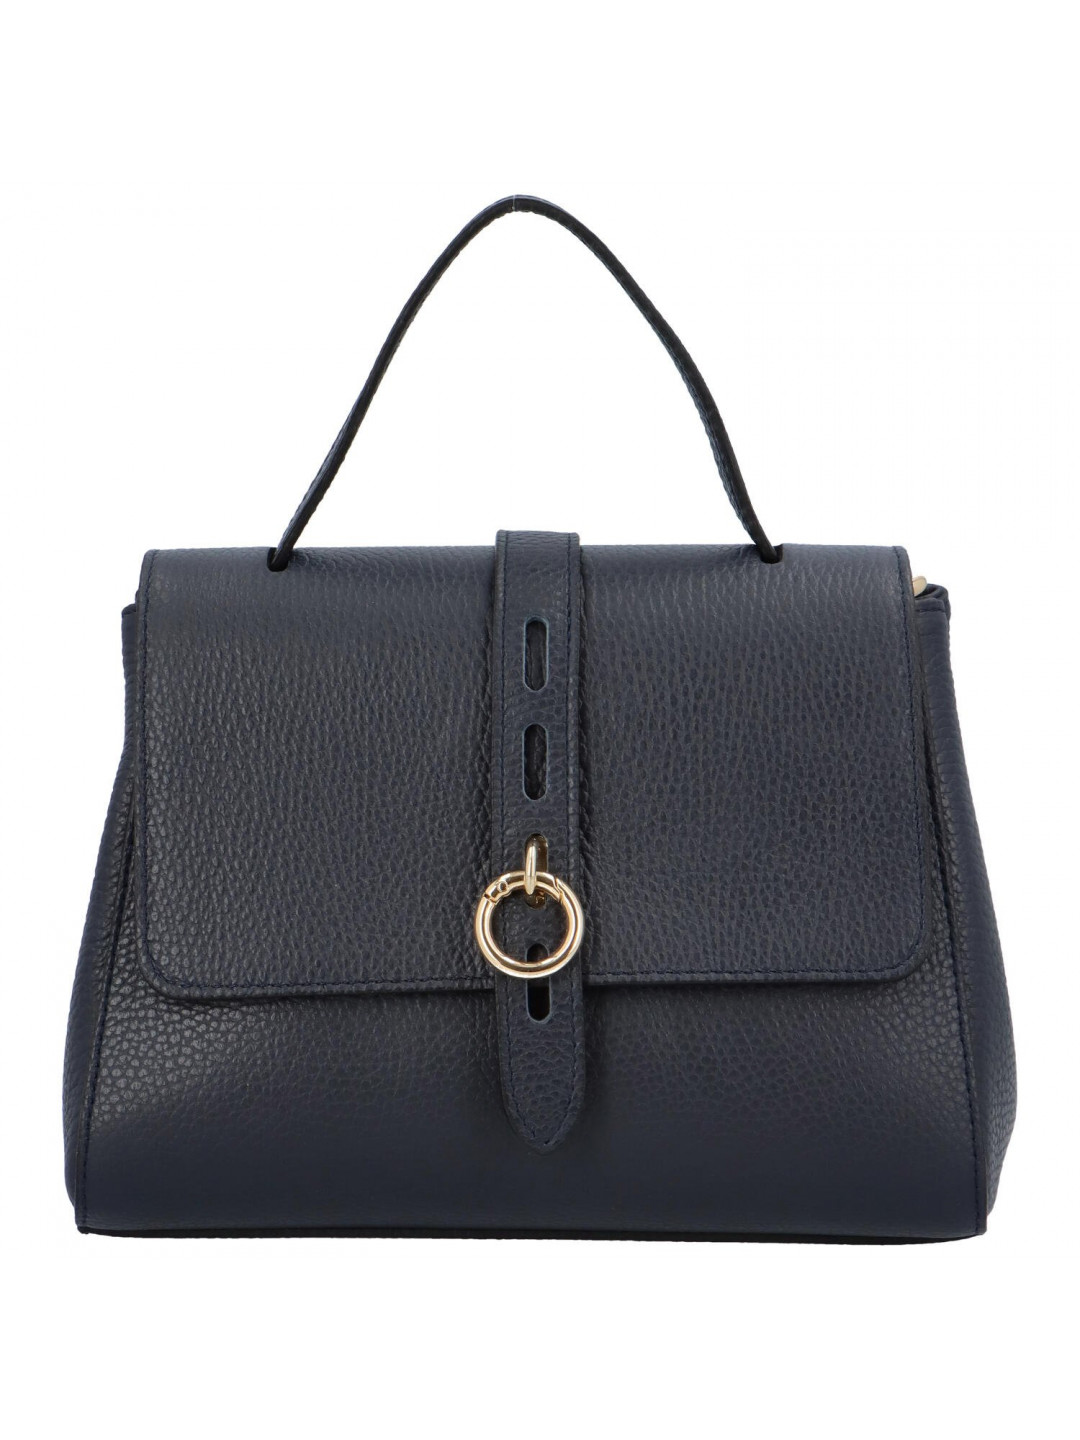 Luxusní dámská kožená kufříková kabelka do ruky Ella tmavě modrá